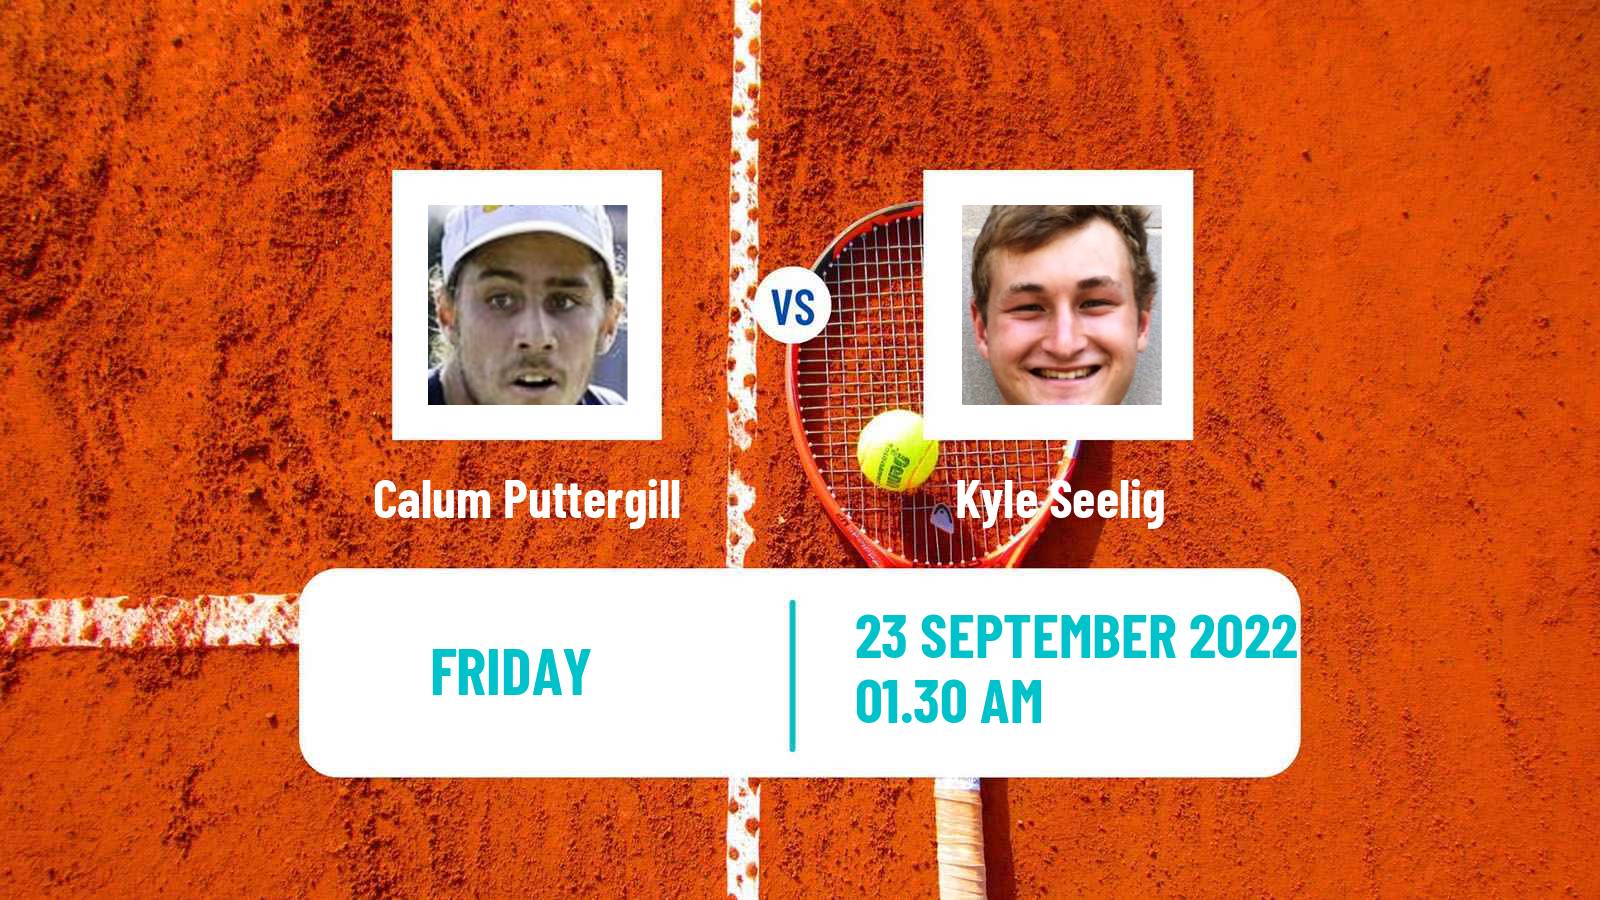 Tennis ITF Tournaments Calum Puttergill - Kyle Seelig